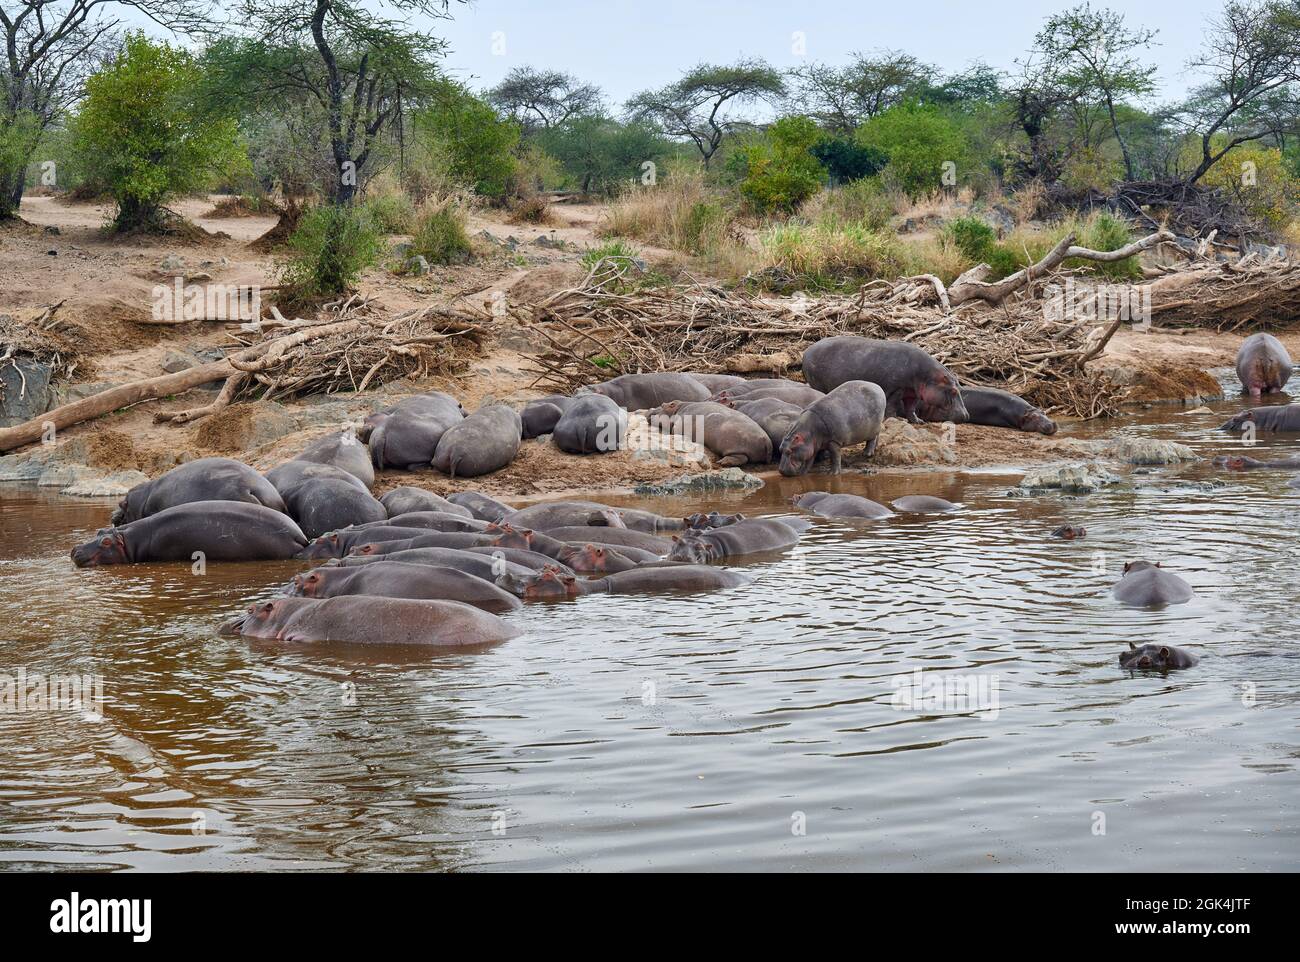 Ippopotamo o Ippopotamo (Ippopotamo anfibio) all'Hippo Pool nel Parco Nazionale di Serengeti, sito patrimonio mondiale dell'UNESCO, Tanzania, Africa Foto Stock